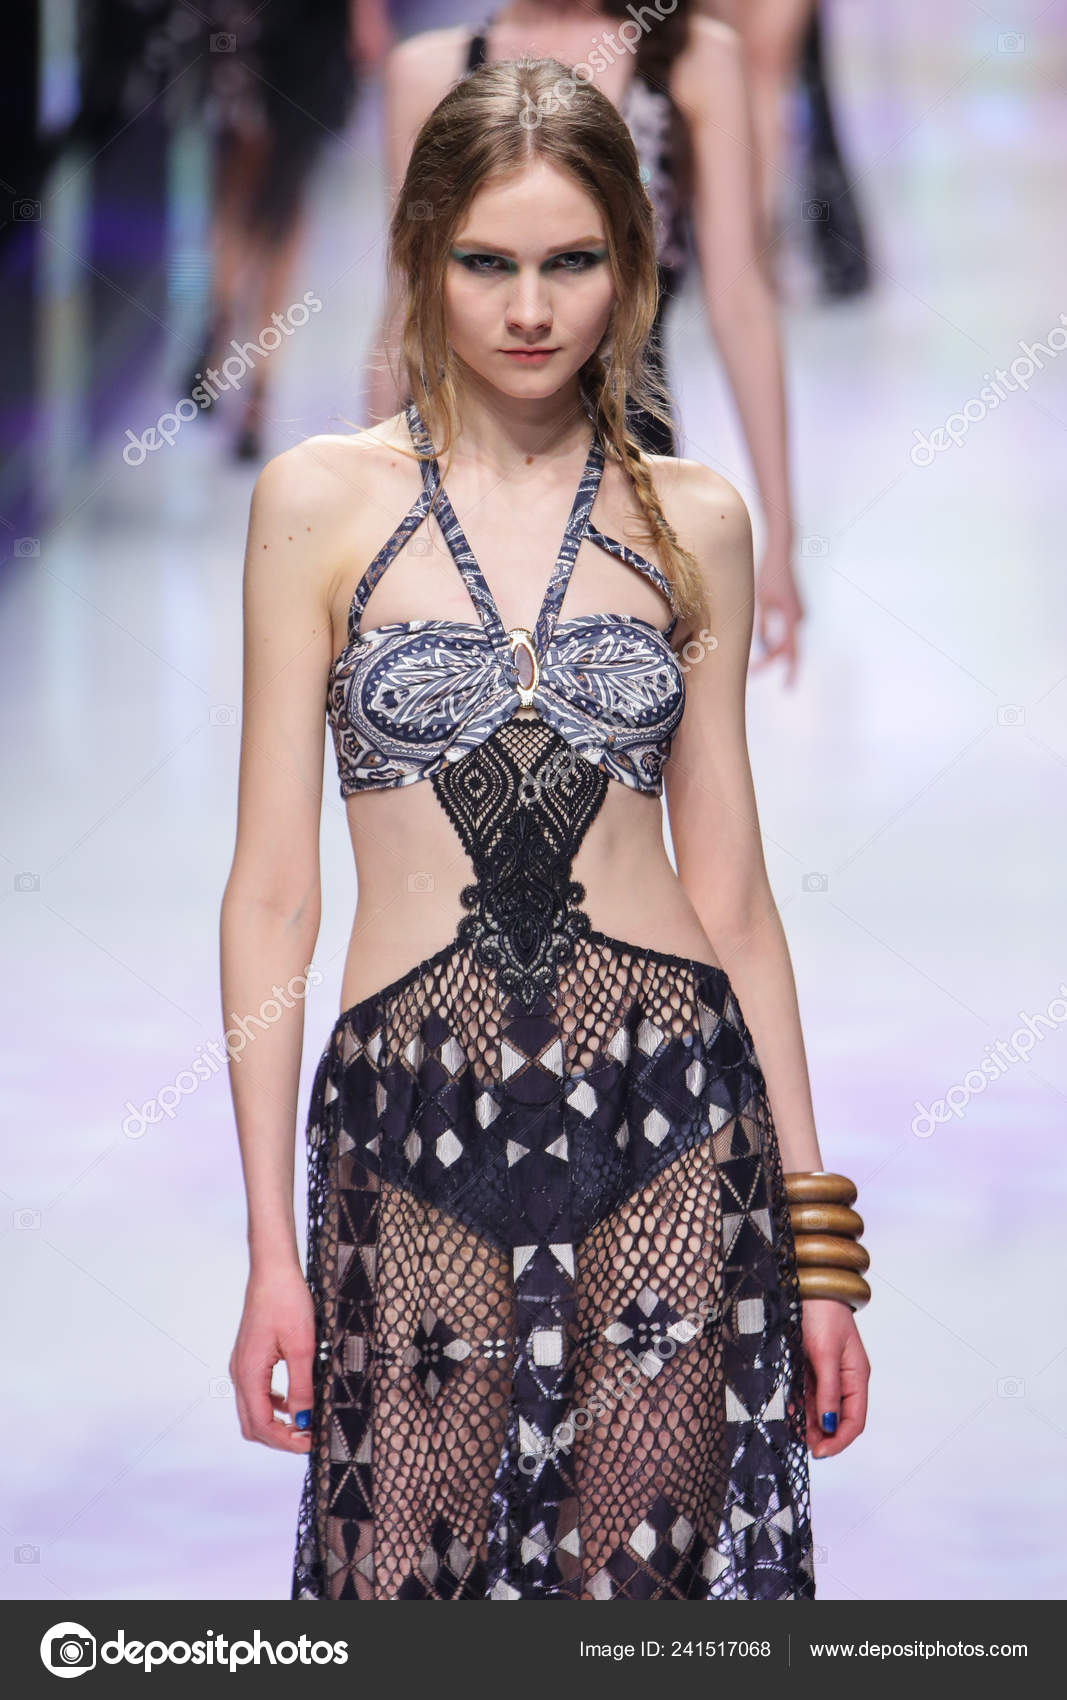 2014年4月9日在中国上海2014上海时装周一位模特在内衣品牌艾默尔时装秀上展示了新的作品—, 57% OFF